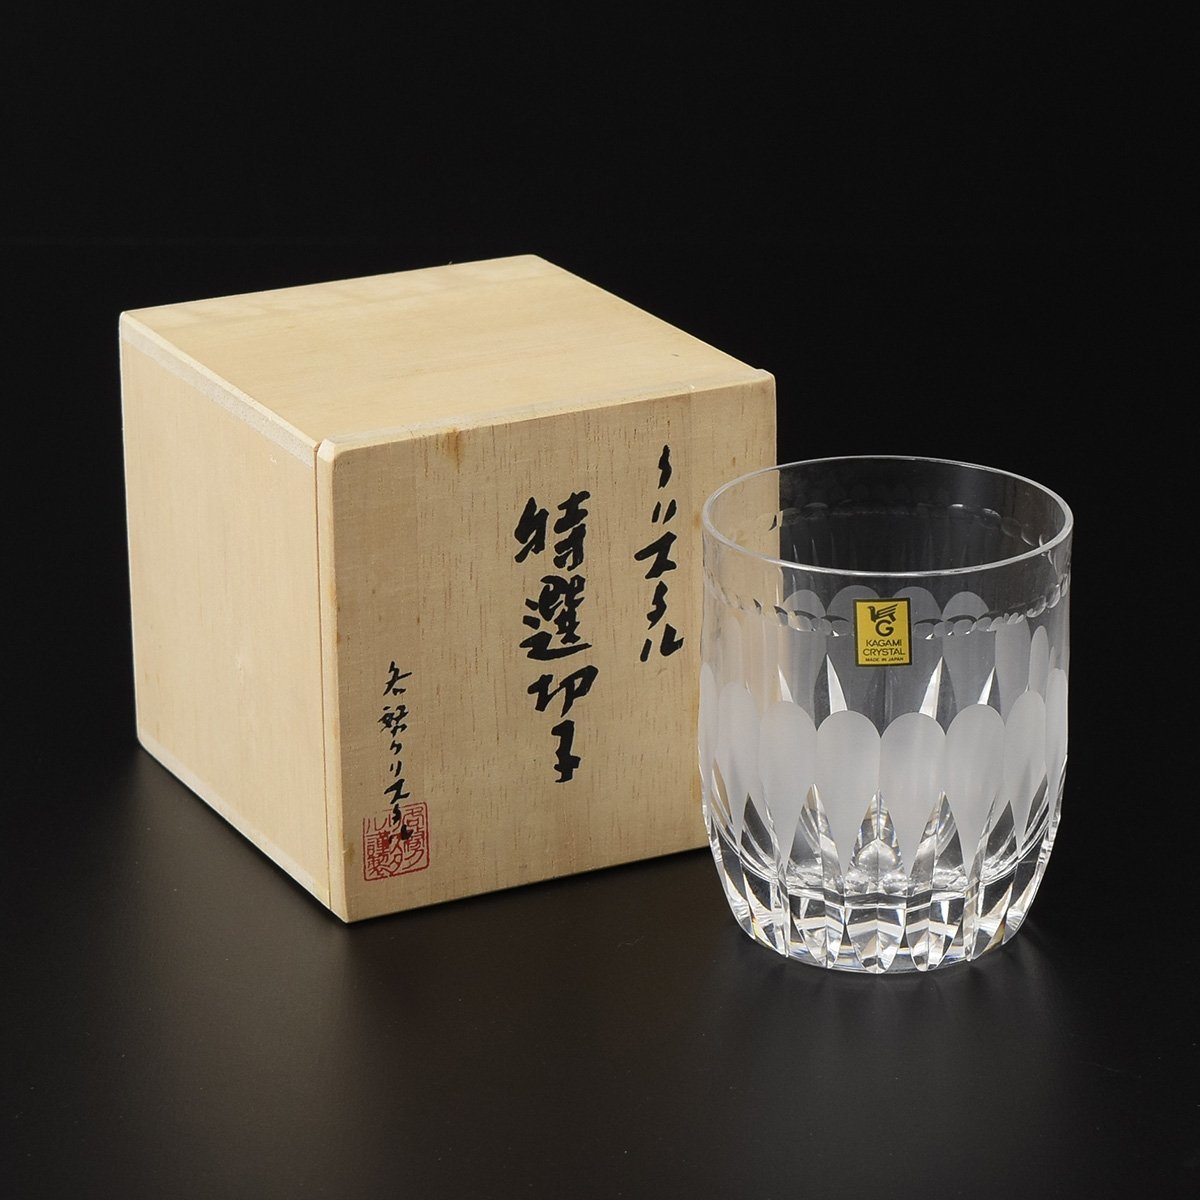 カガミクリスタル 江戸切子 最高級 ハンドカット 冷酒グラス